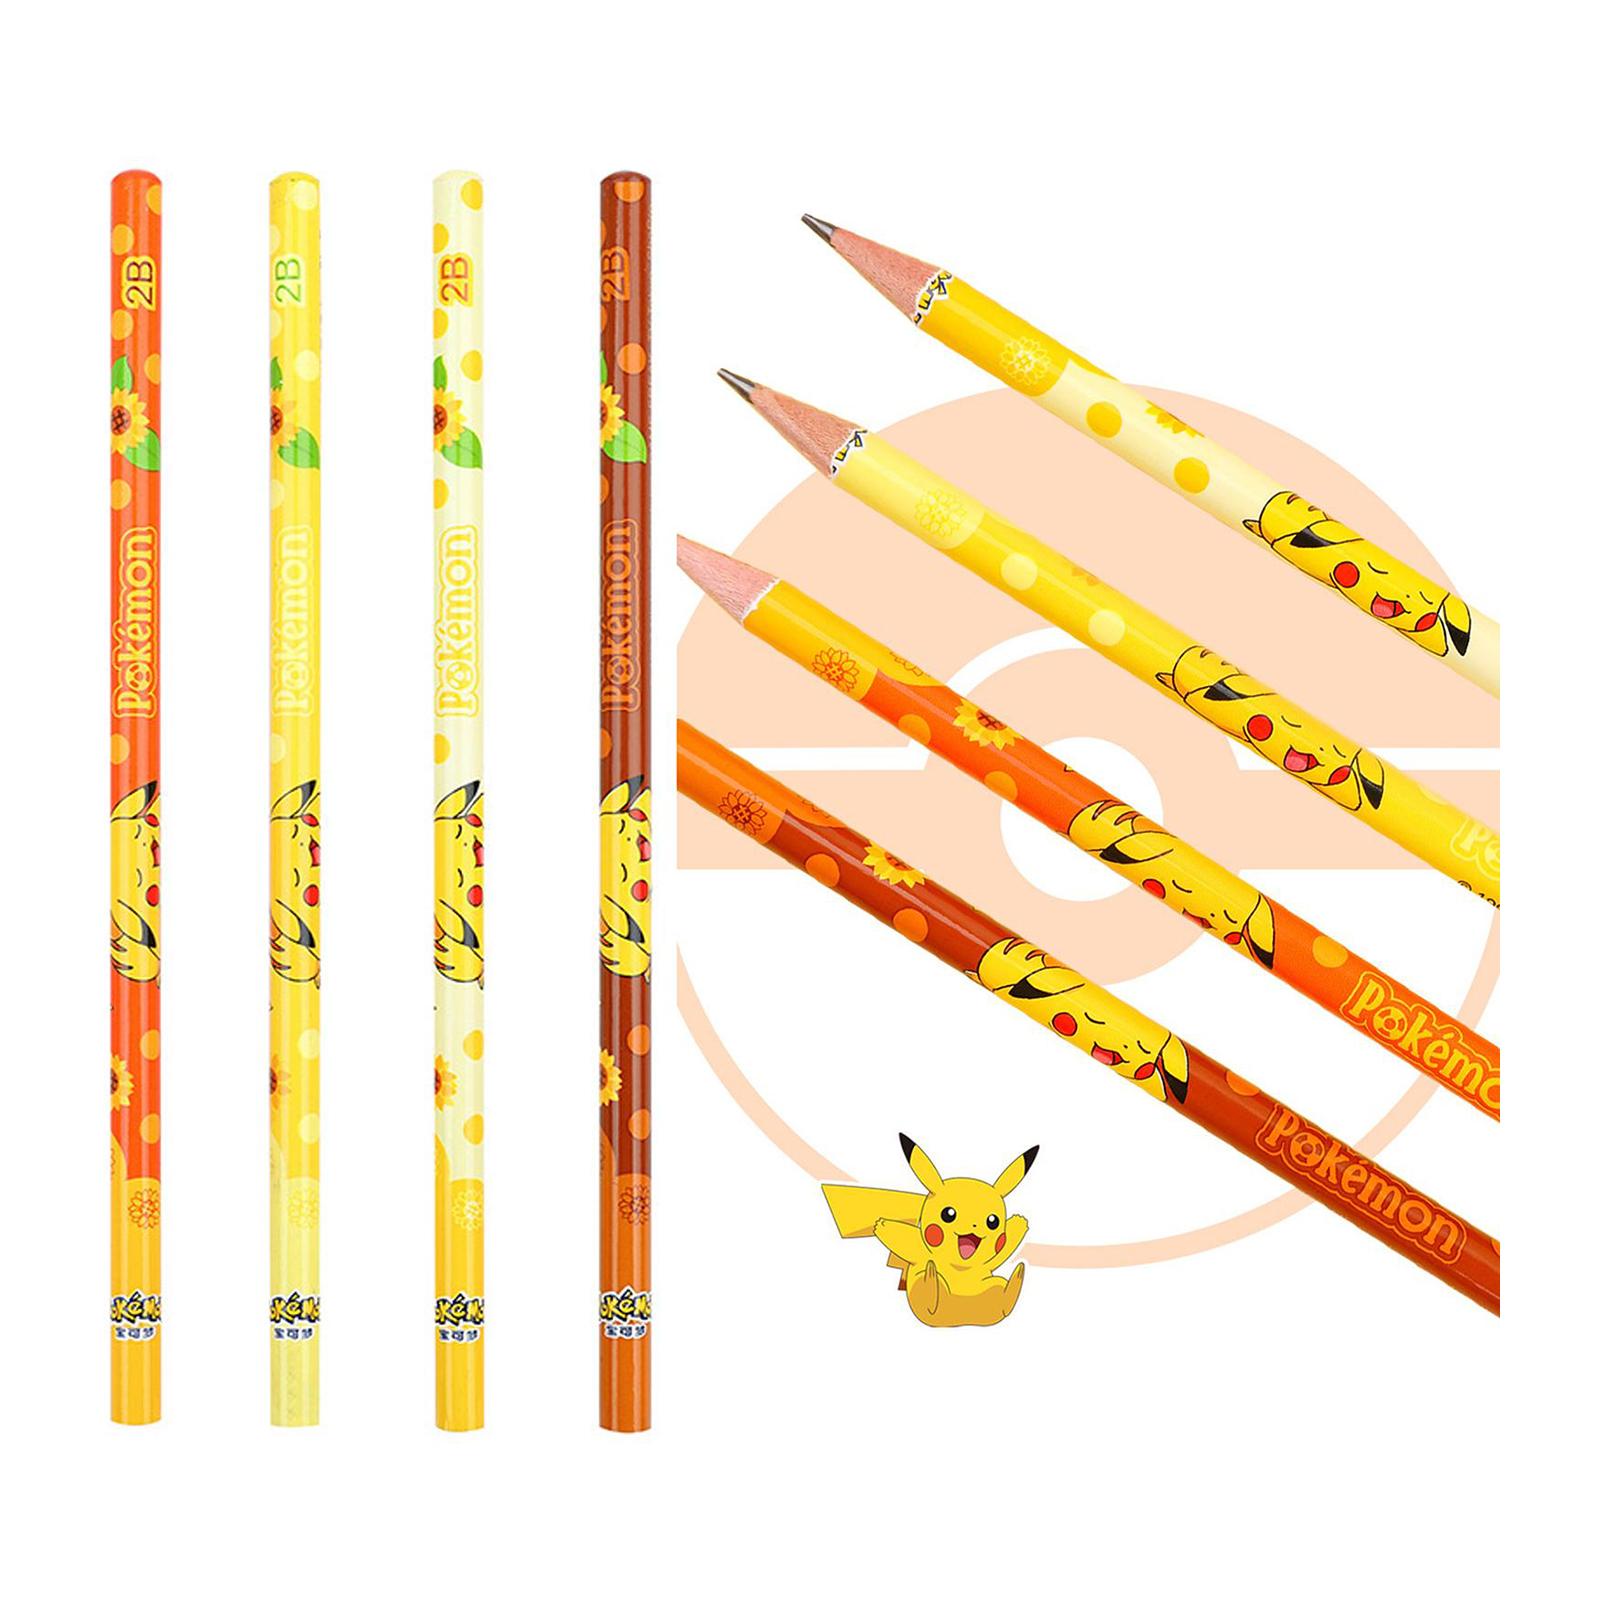 Pin Mu 2B Pikachu Pencil Set Pokemon Authorized - 12 PCS